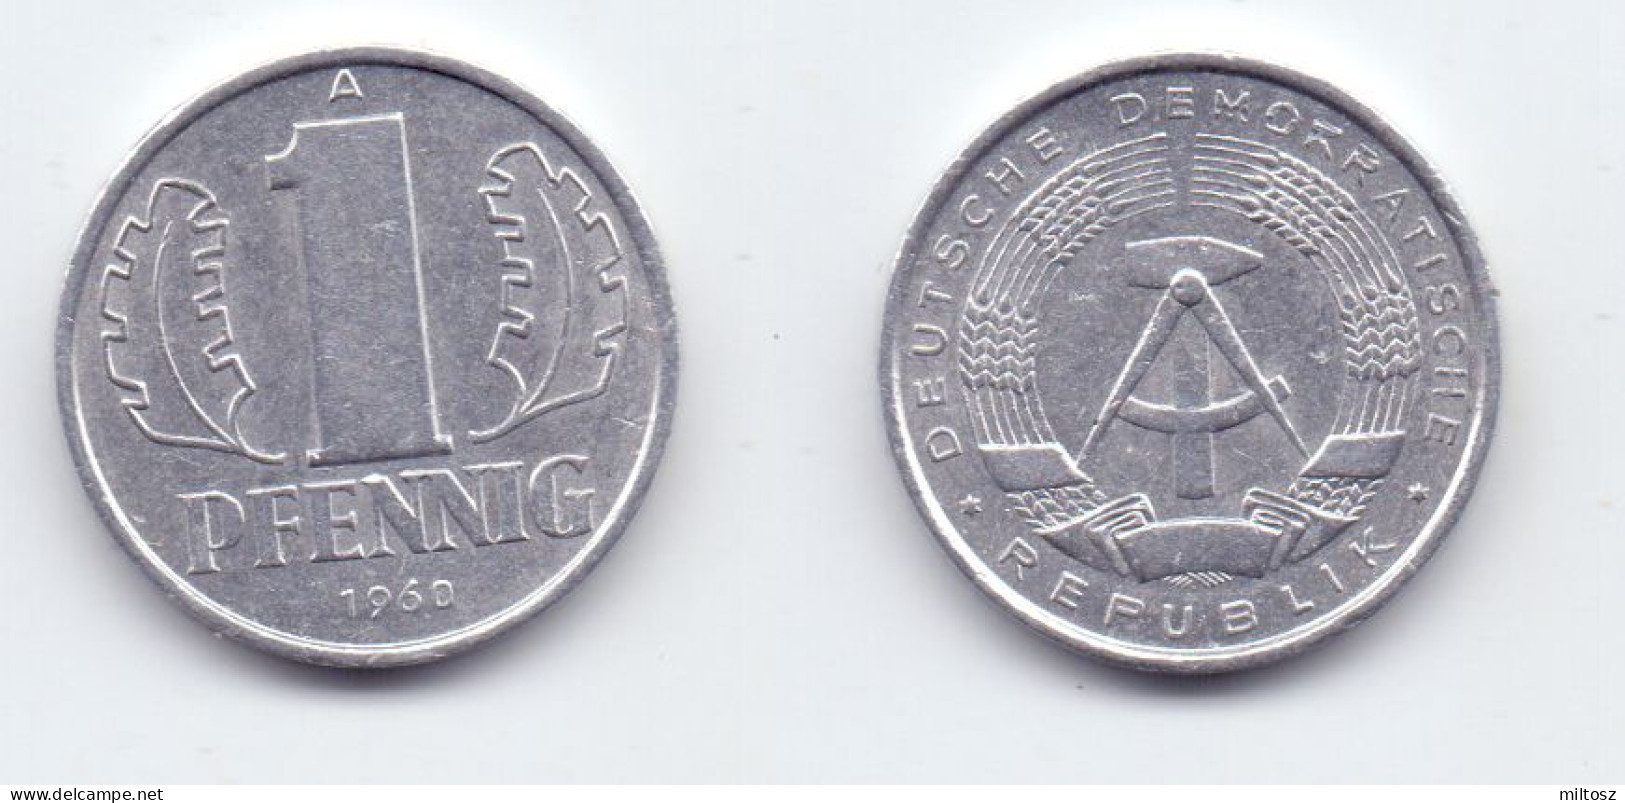 Germany DDR 1 Pfennig 1968 A - 1 Pfennig